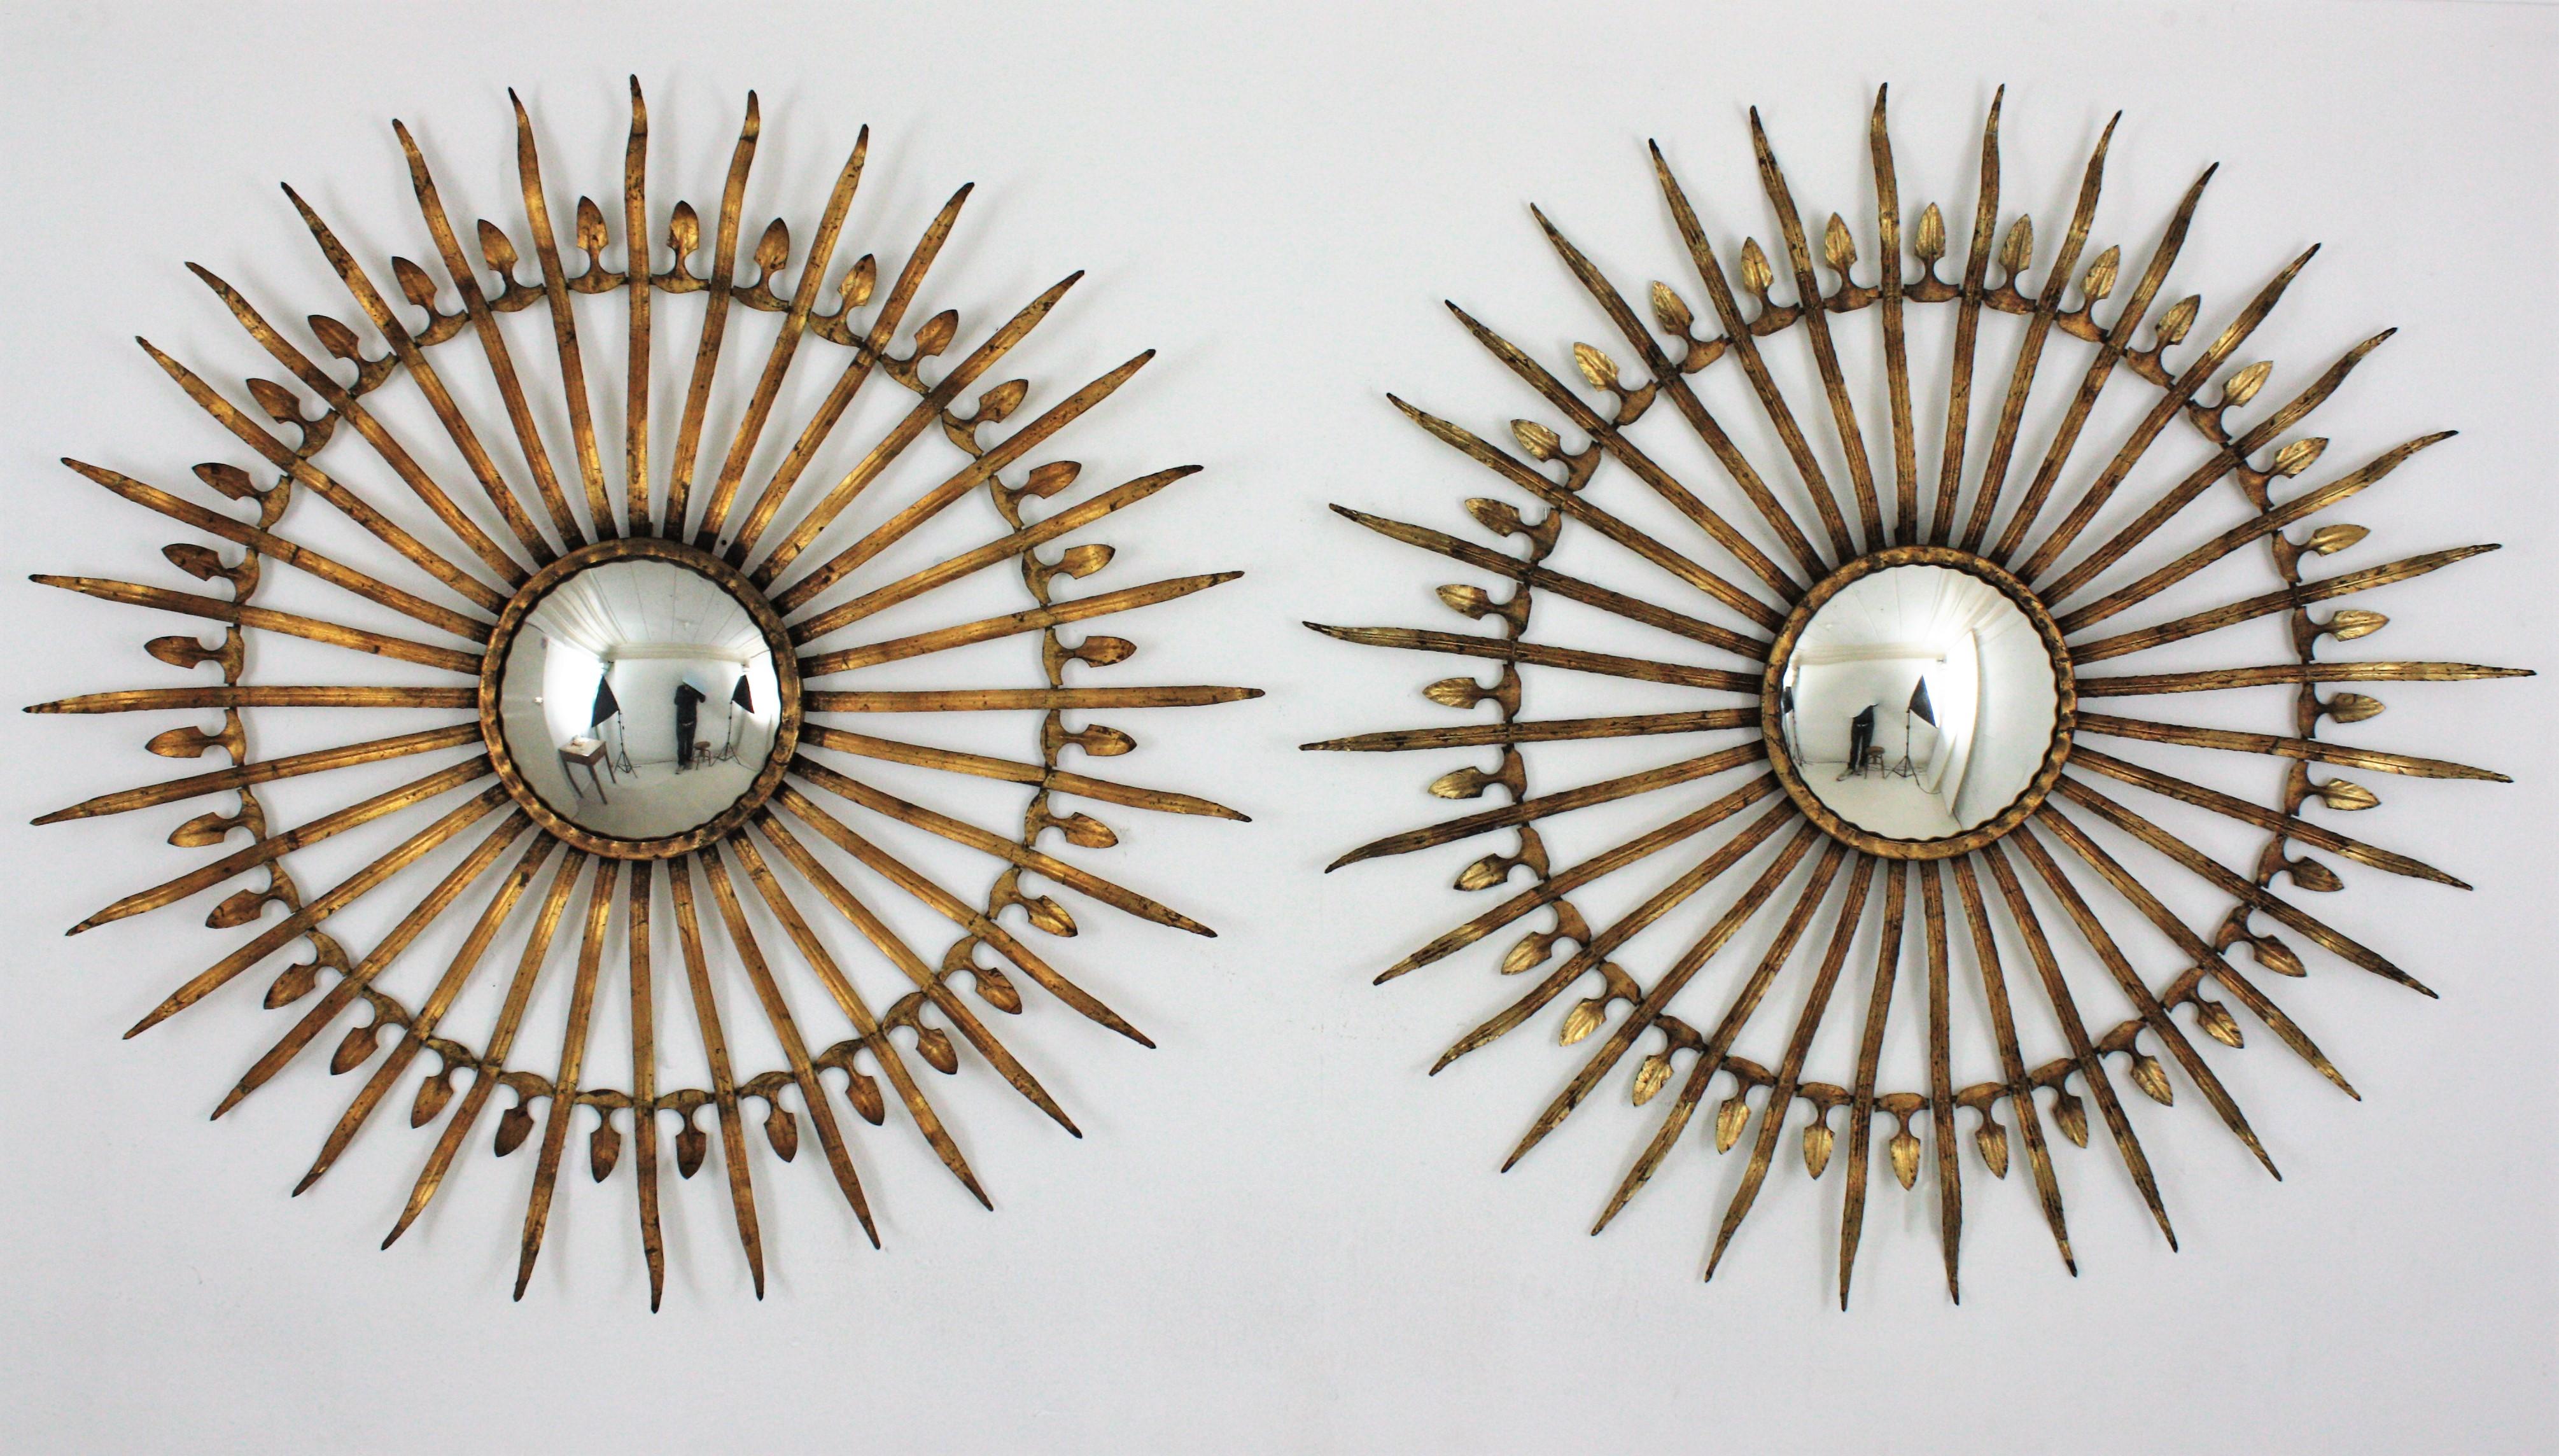 20th Century Pair of Sunburst Starburst Convex Mirrors in Gilt Iron, Large Scale